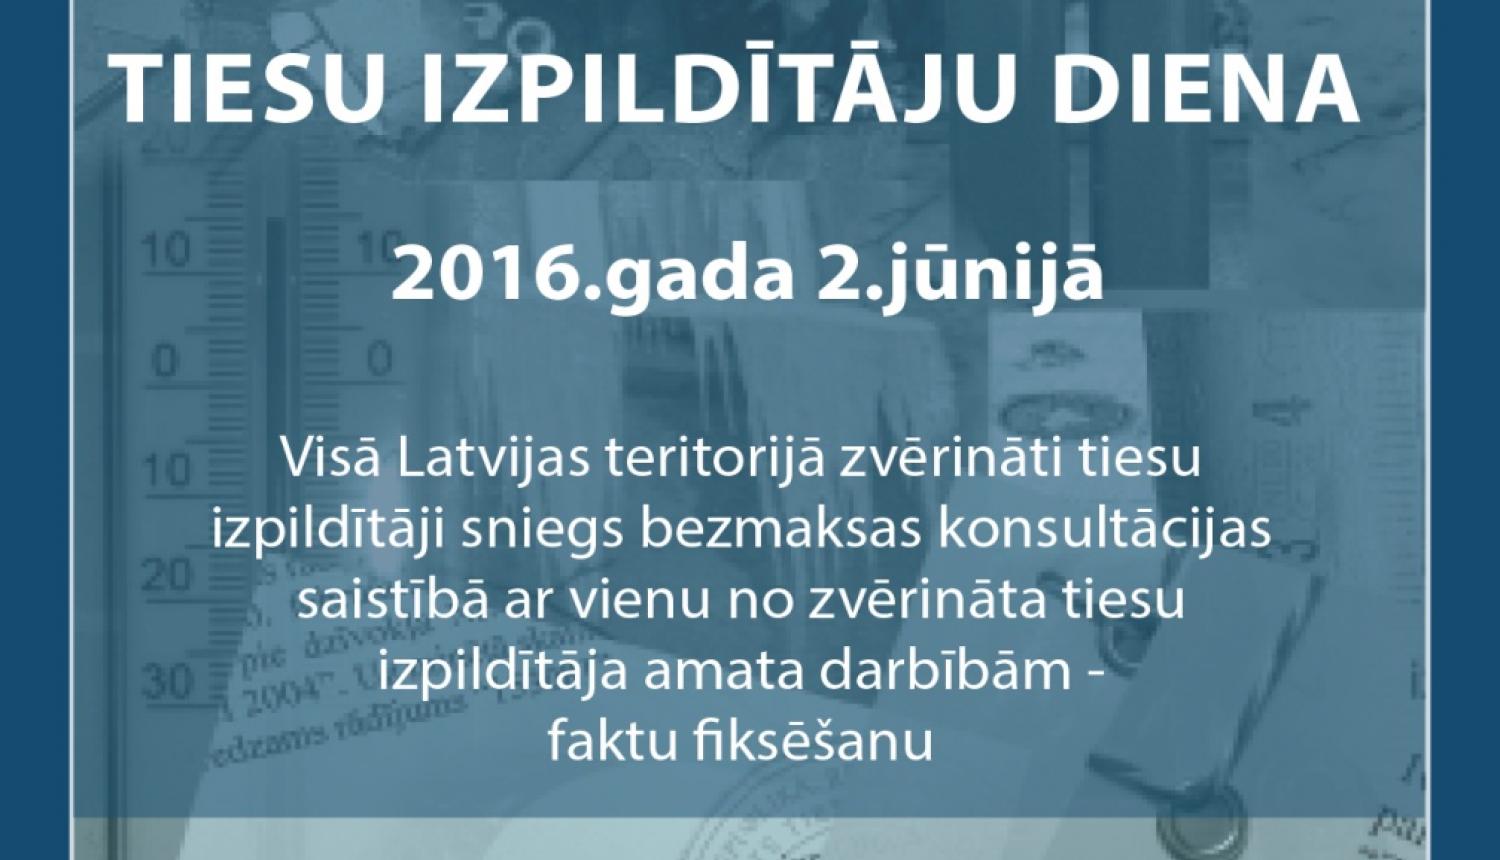 Latvijā pirmo reizi notiks Tiesu izpildītāju diena